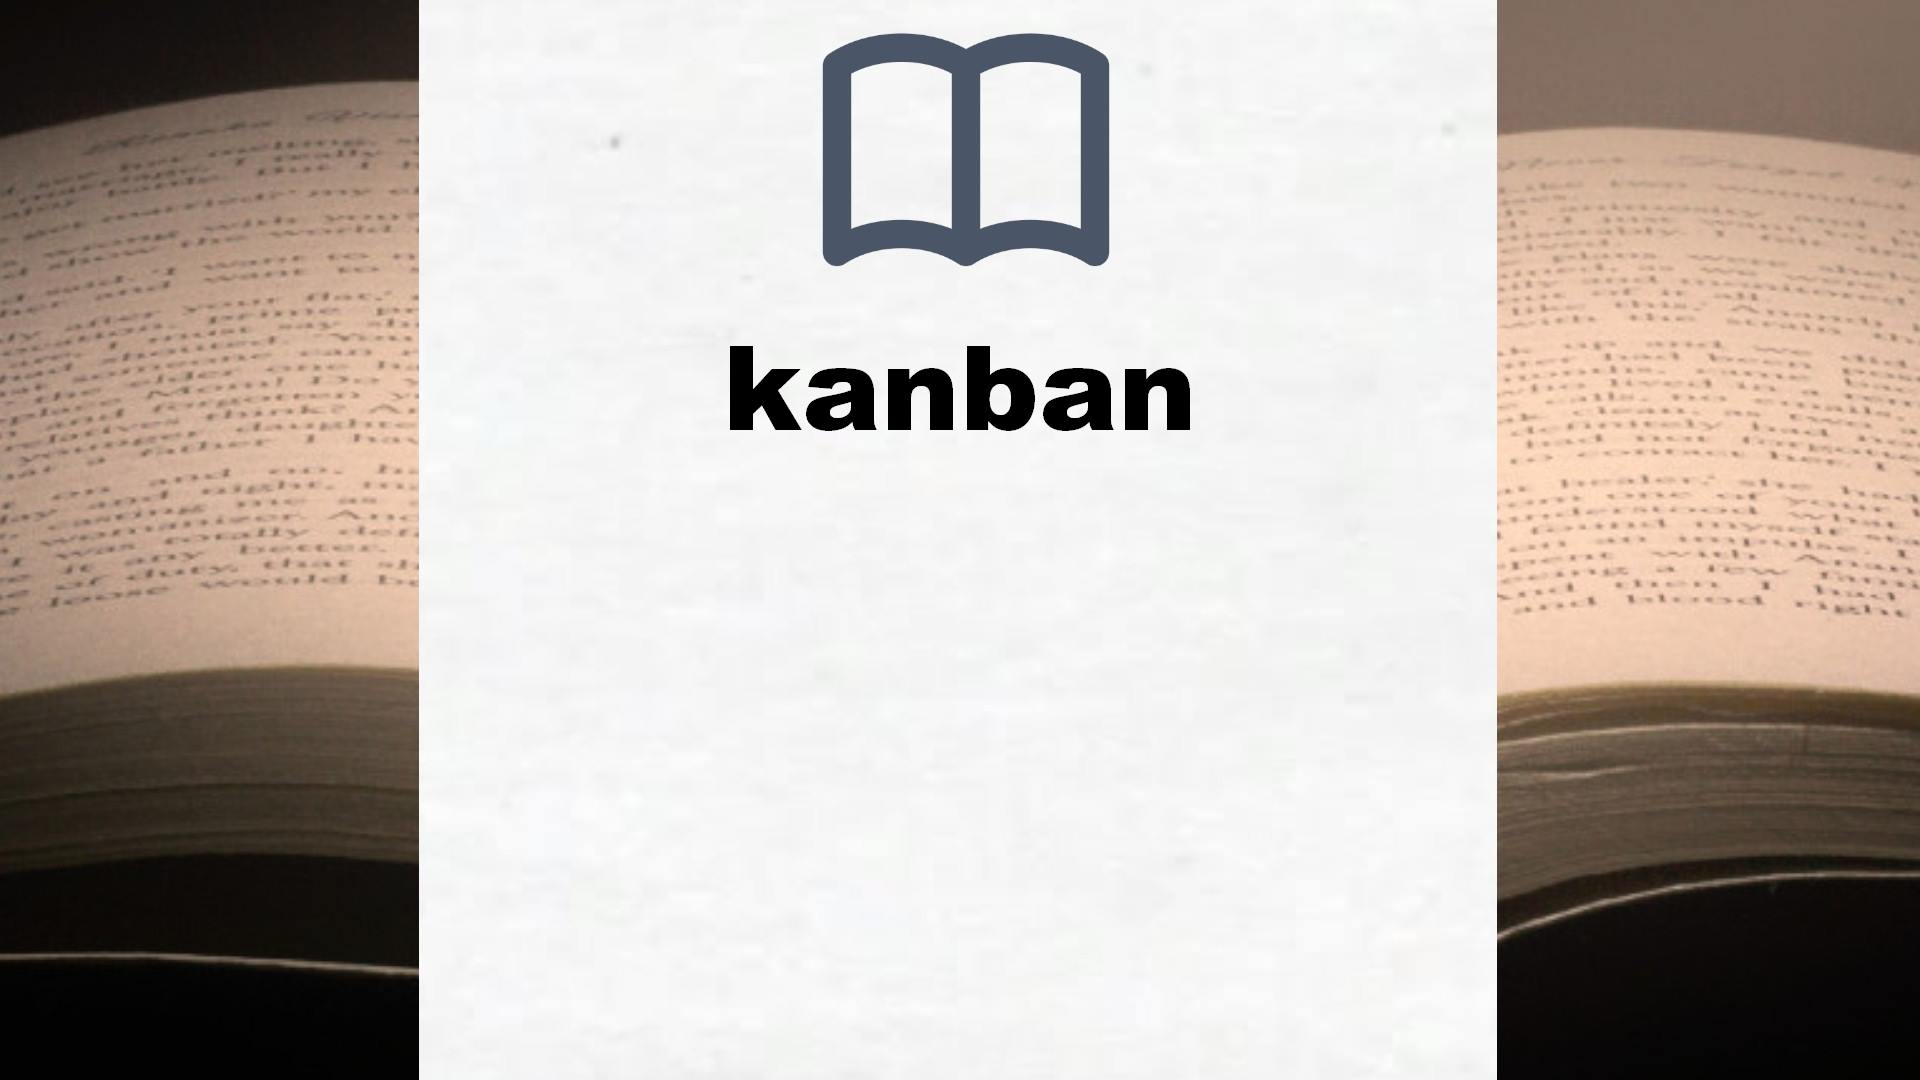 Libros sobre kanban